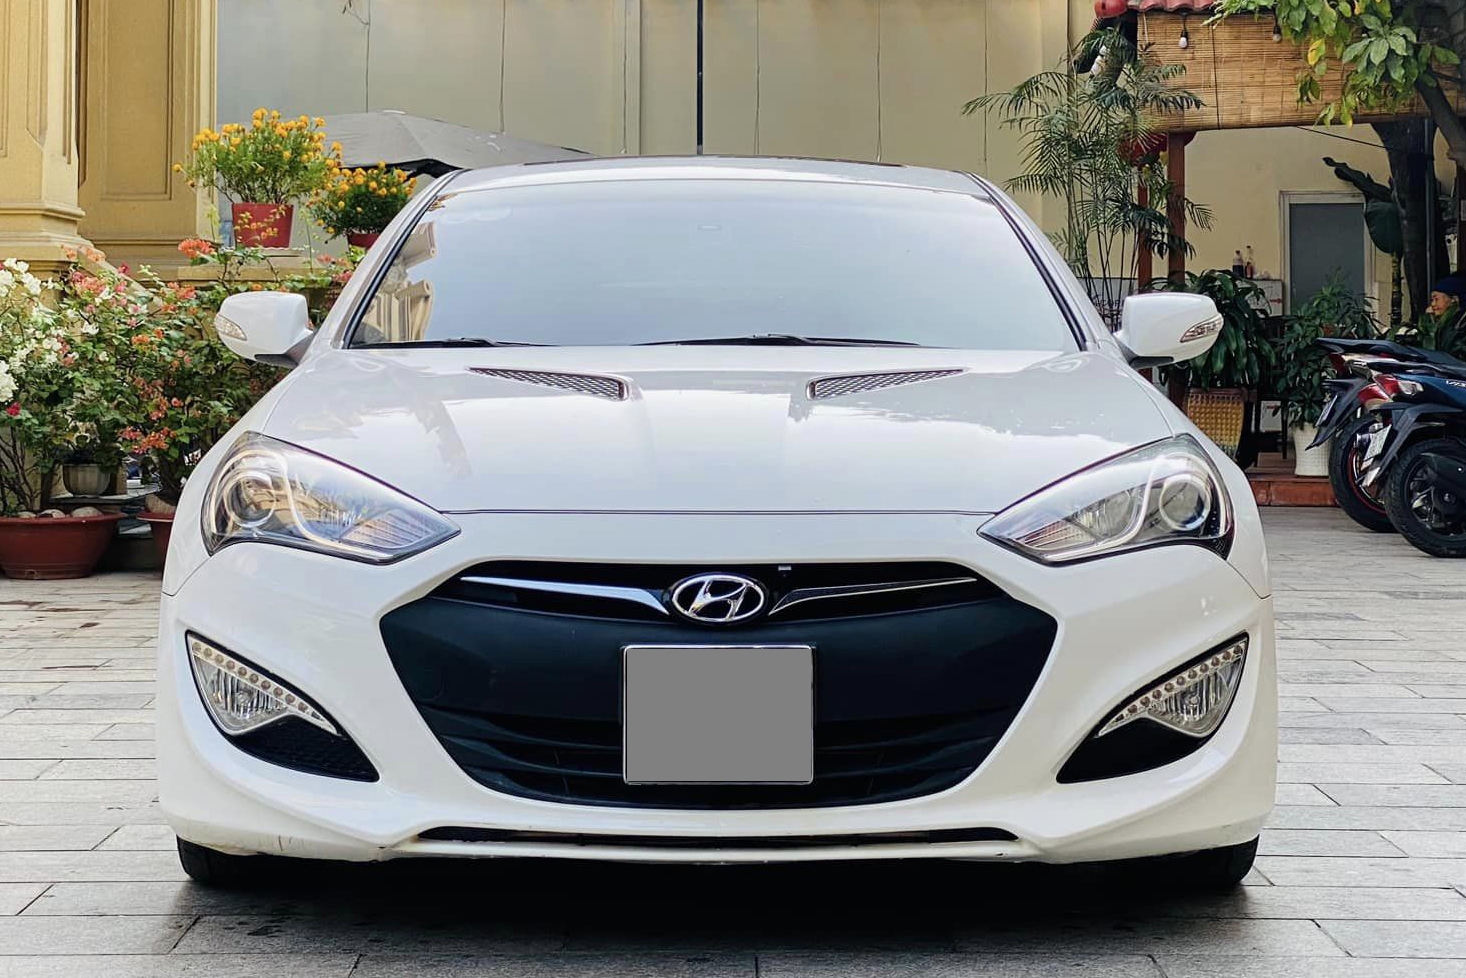 Chiếc Hyundai Genesis Coupe này giữ giá hơn Camry cùng đời: Sau 12 năm vẫn còn gần 540 triệu, mỗi năm chỉ đi hơn 2.000km- Ảnh 5.